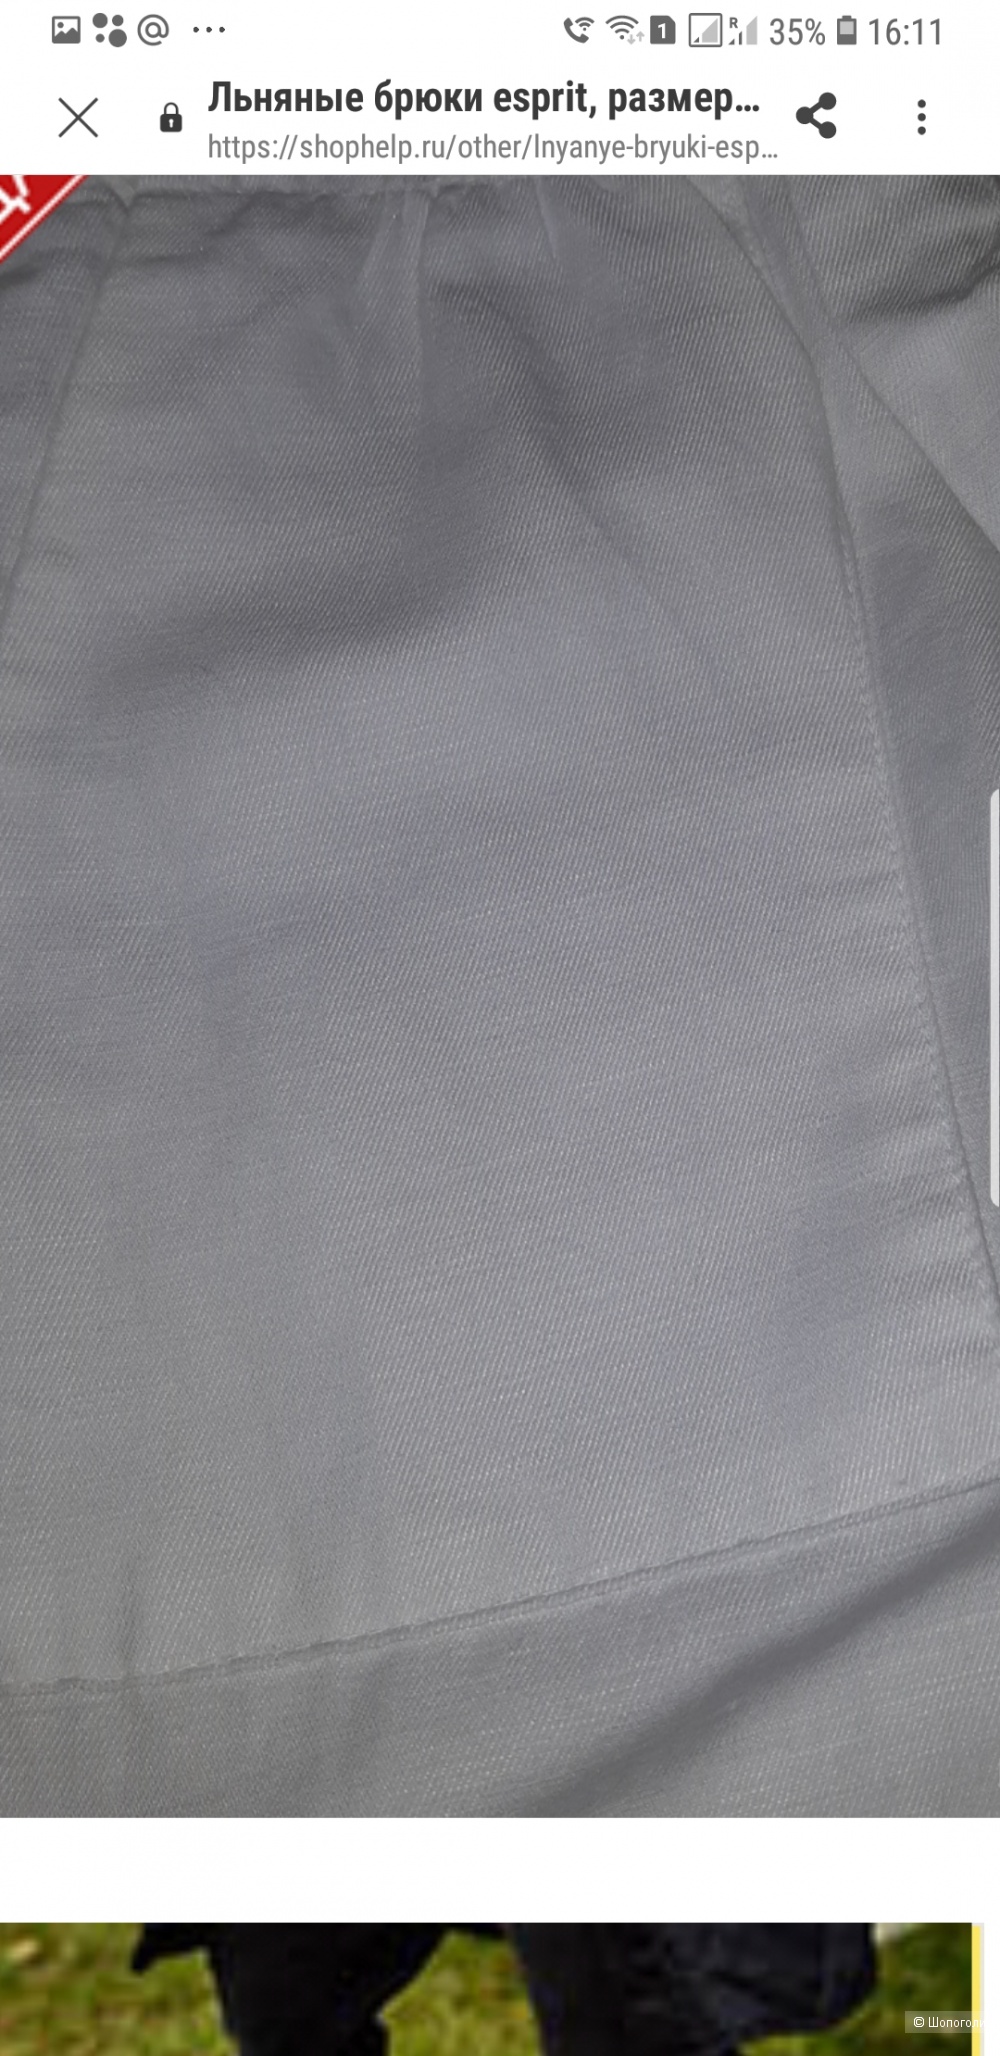 Льняные брюки Esprit, размер 44-46